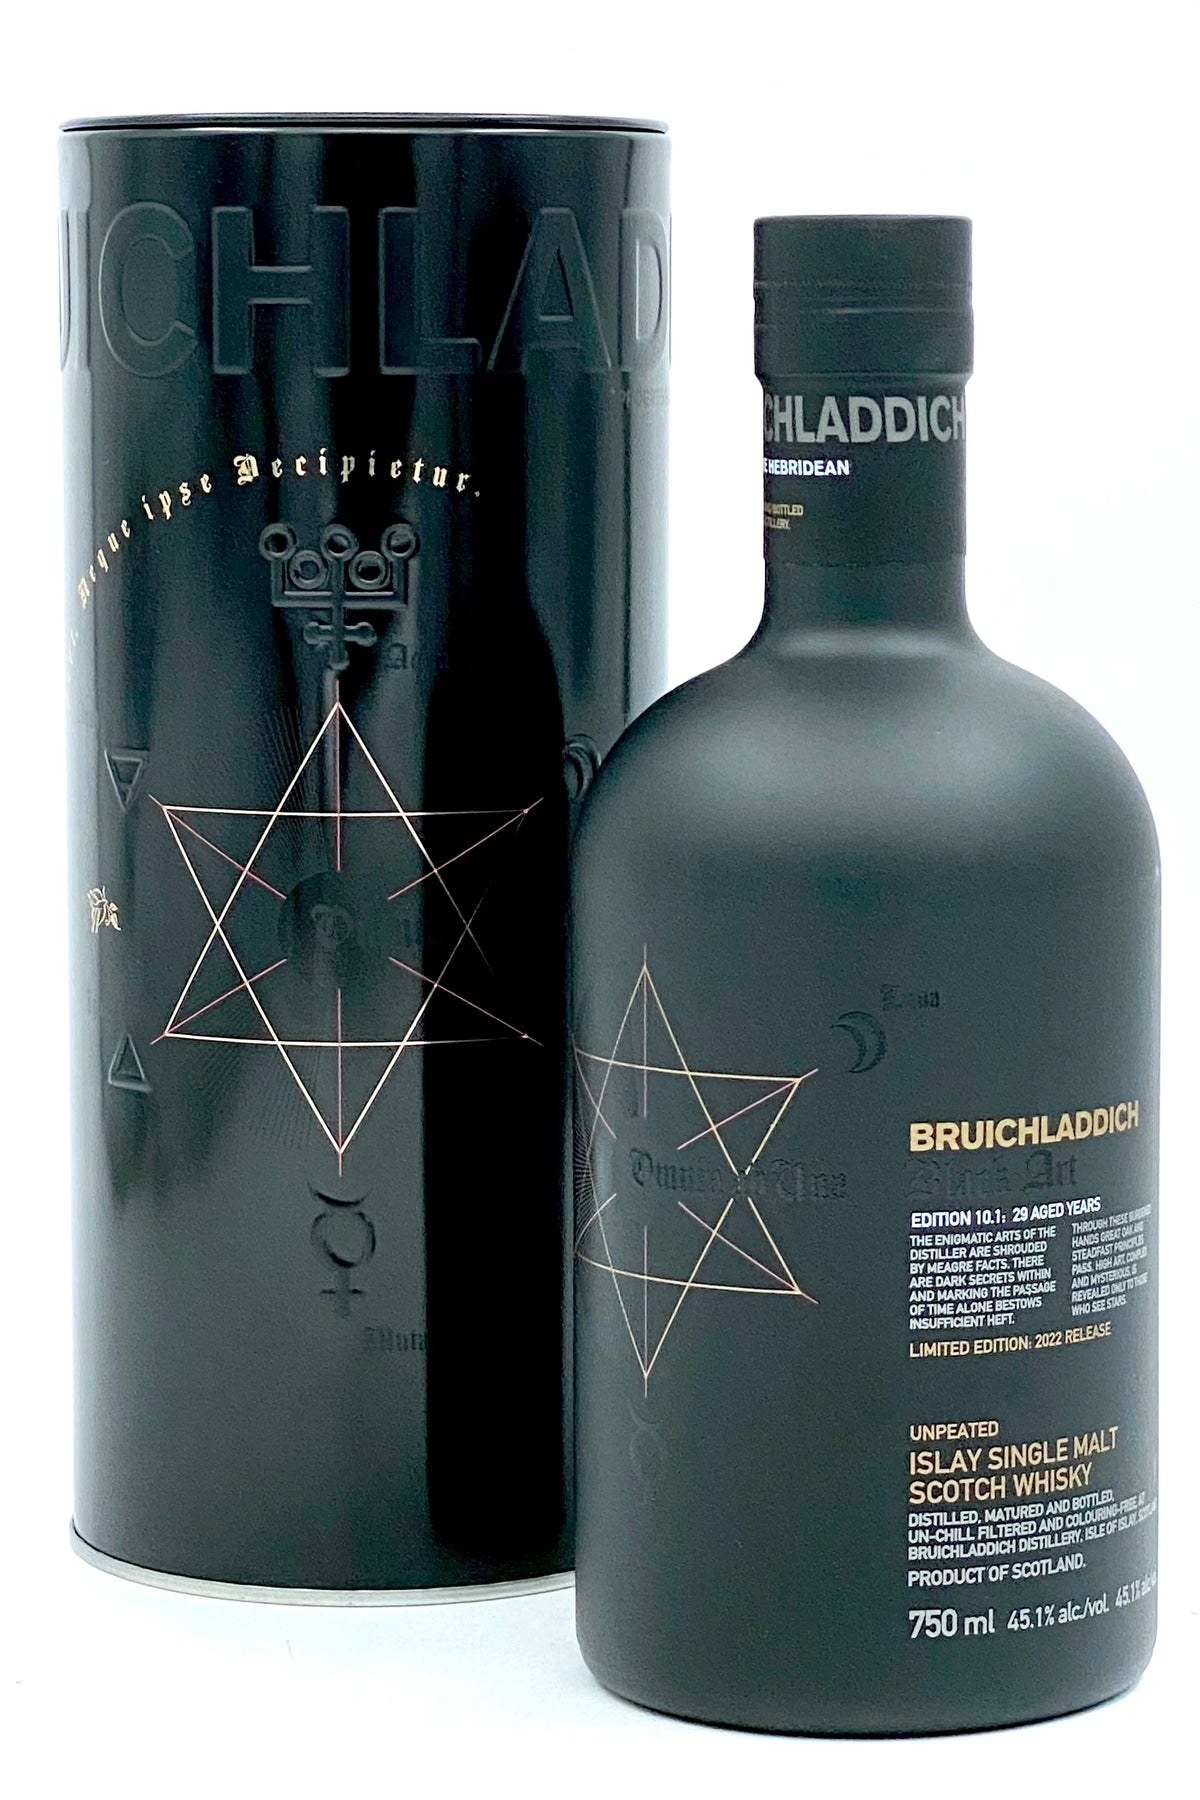 Bruichladdich Black Art Edition 10 29 Year Old Islay Single Malt Scotch Whisky